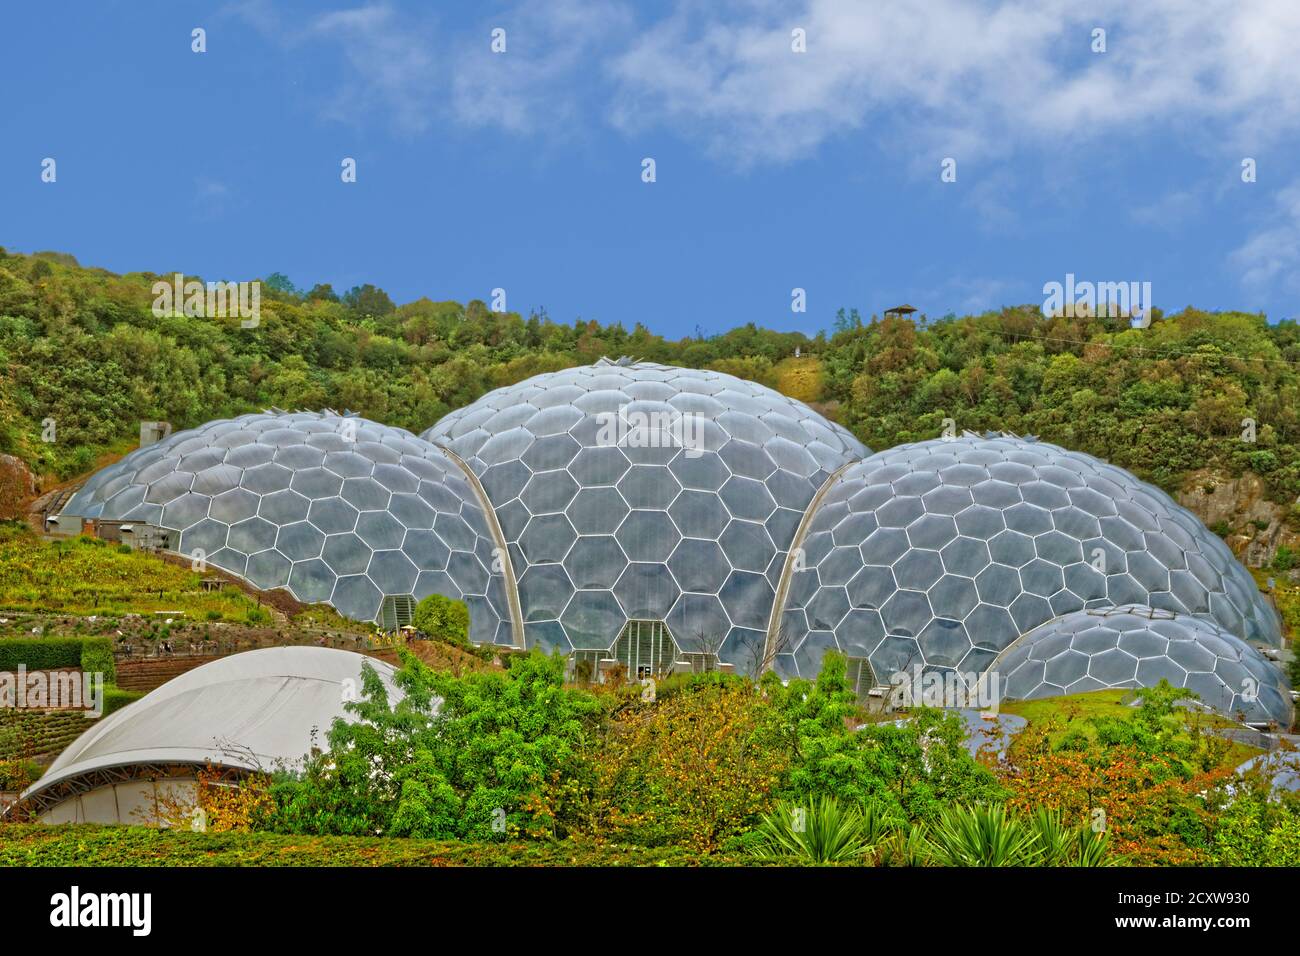 The Eden Project Biomes, Bodelva vicino a St. Austell, Cornovaglia, Inghilterra. Foto Stock